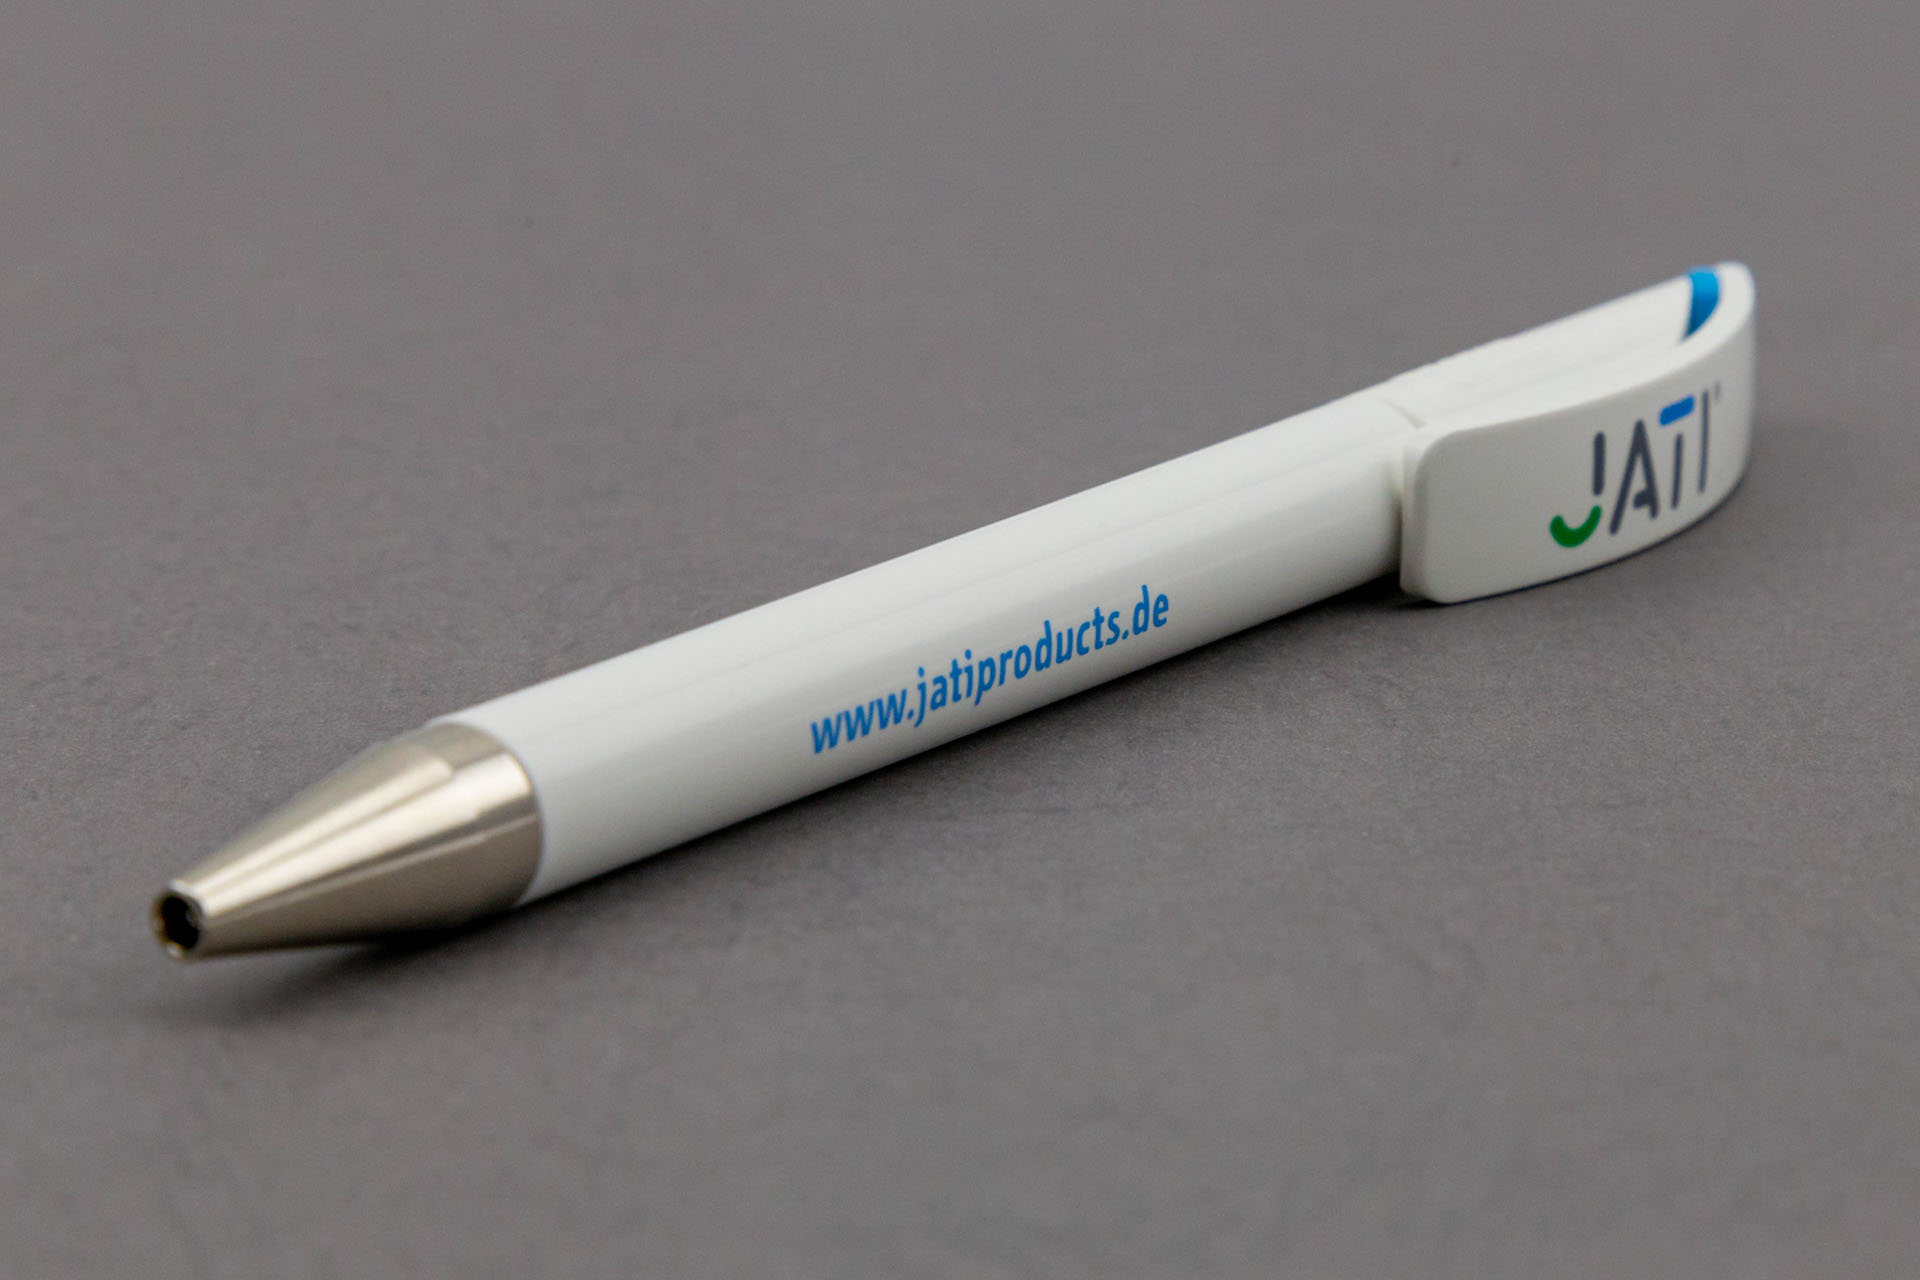 jati kugelschreiber - Dem Schimmel sei Dank: Ein ganz frischer Markenauftritt für JATI – Corporate Design, Logoentwicklung, Grafikdesign